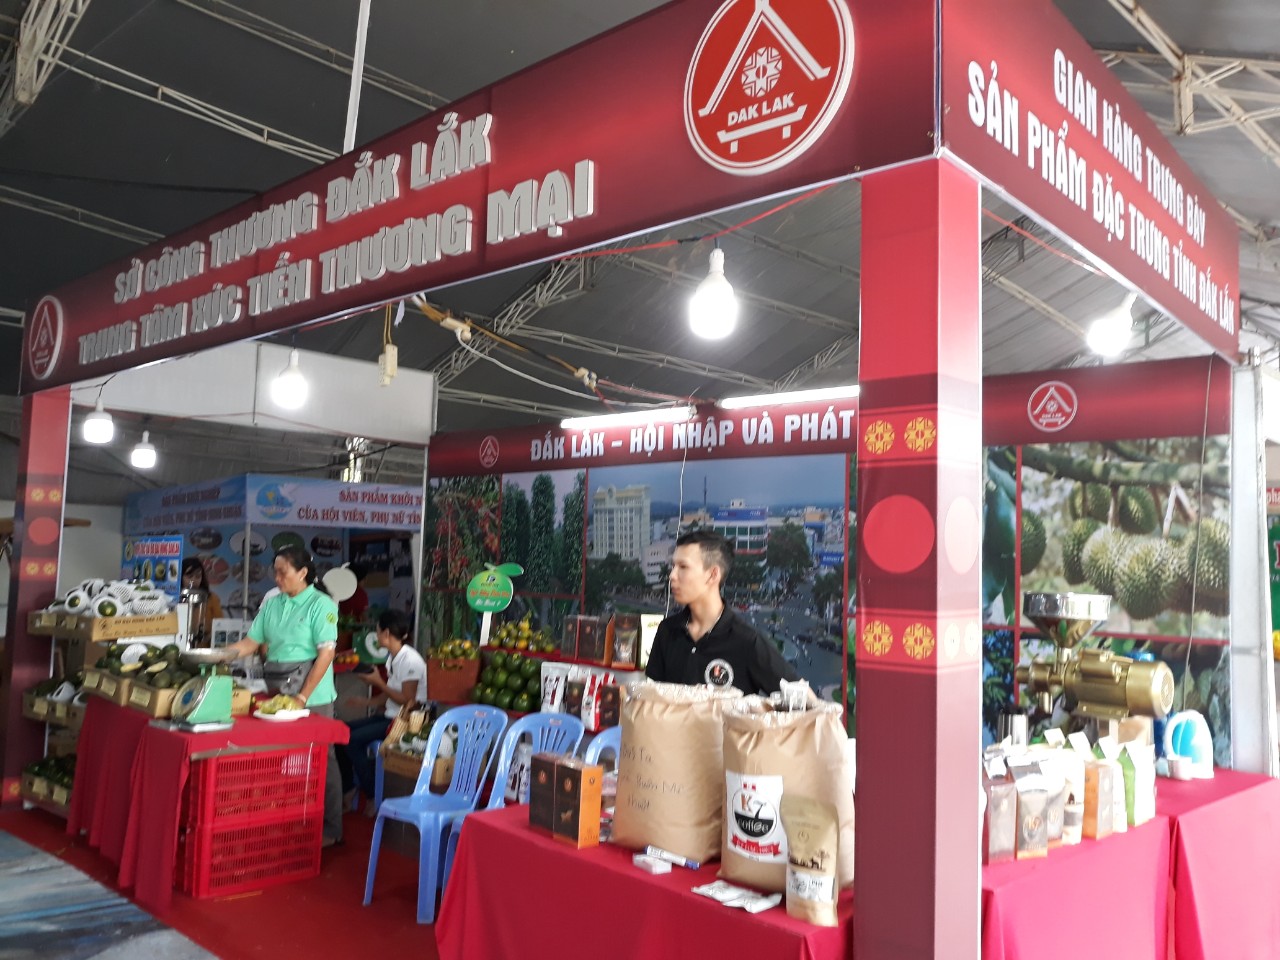 (Hình 1: Hình ảnh gian hàng tỉnh Đắk Lắk tham gia trưng bày tại Hội chợ)